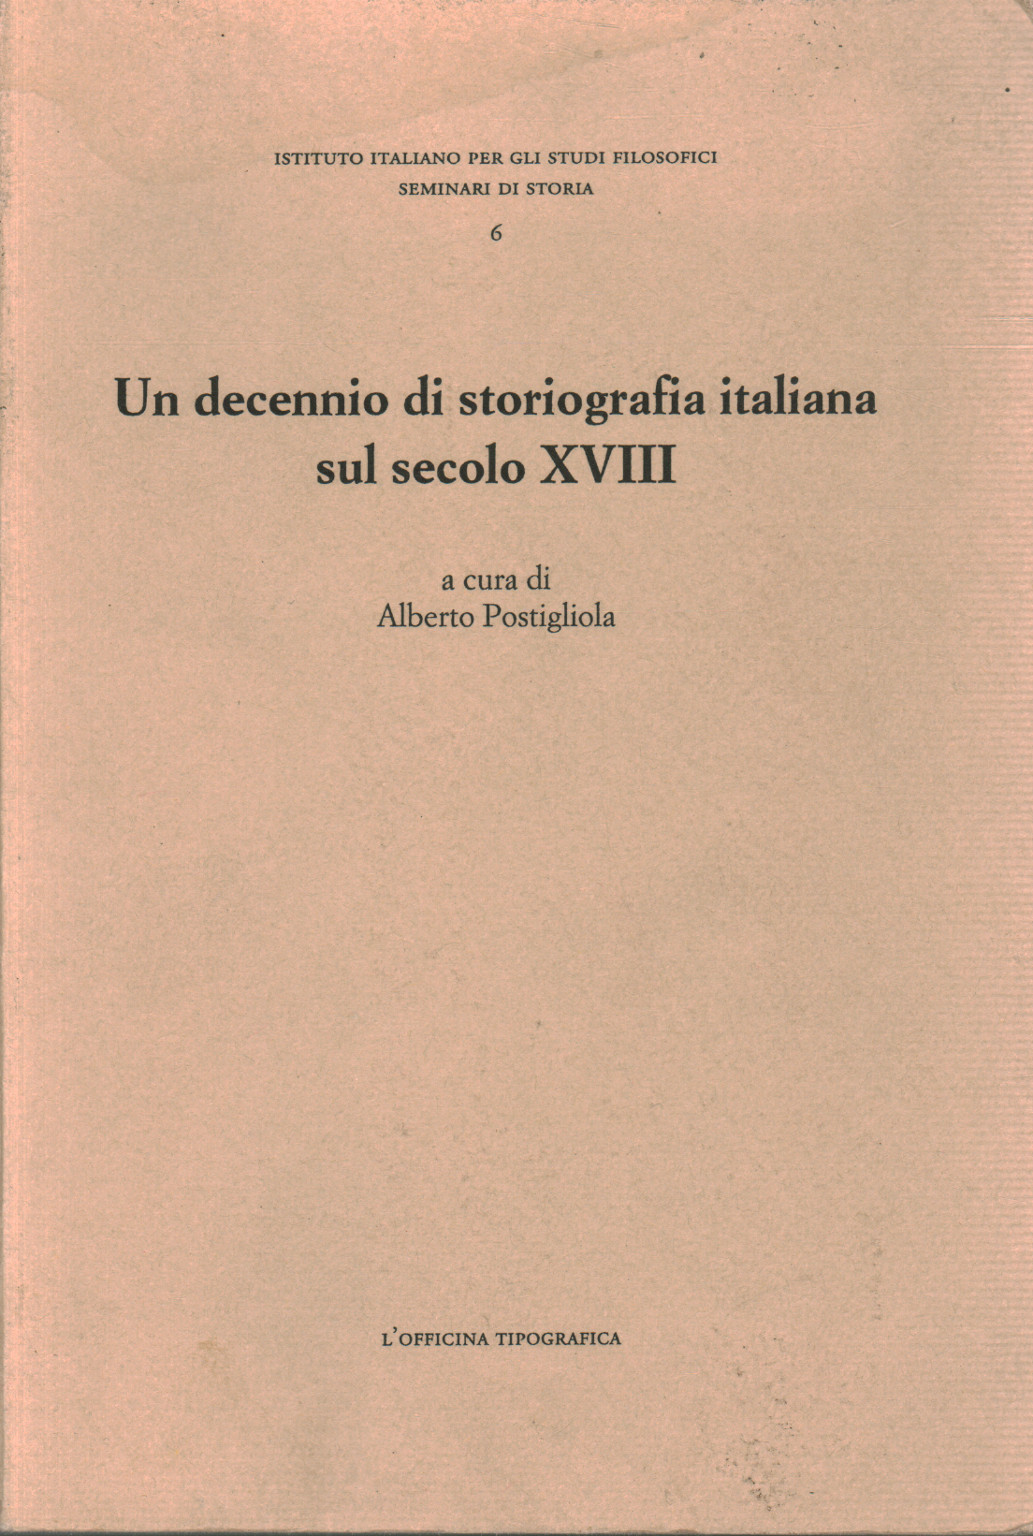 Una década de historiografía italiana en el siglo XV, s.a.